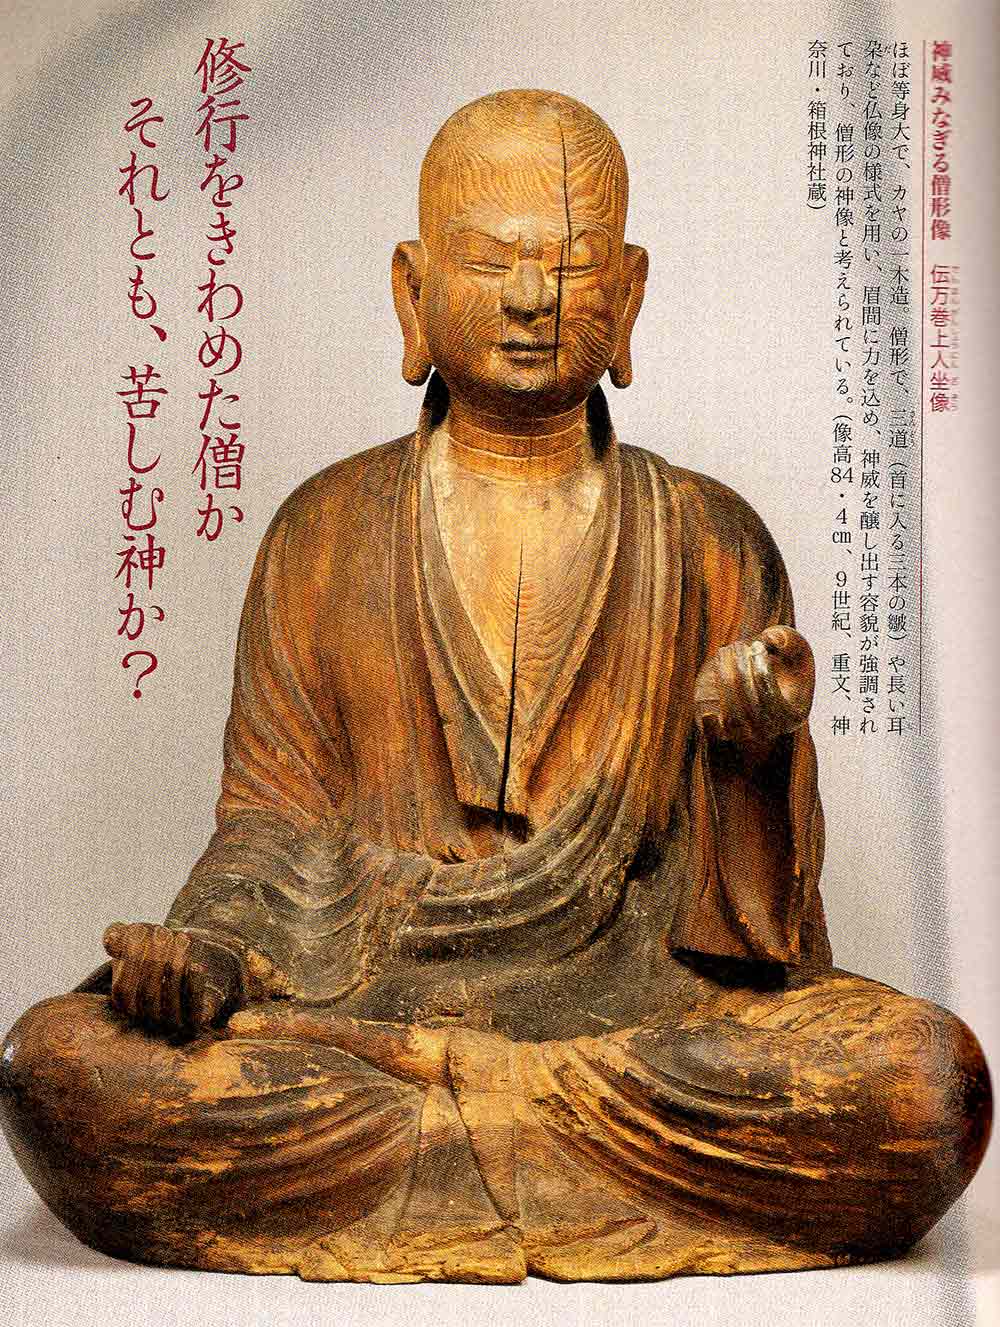 江戸期・神道「男神像」神仏習合・日本の神々・神社奉納神像「A」-